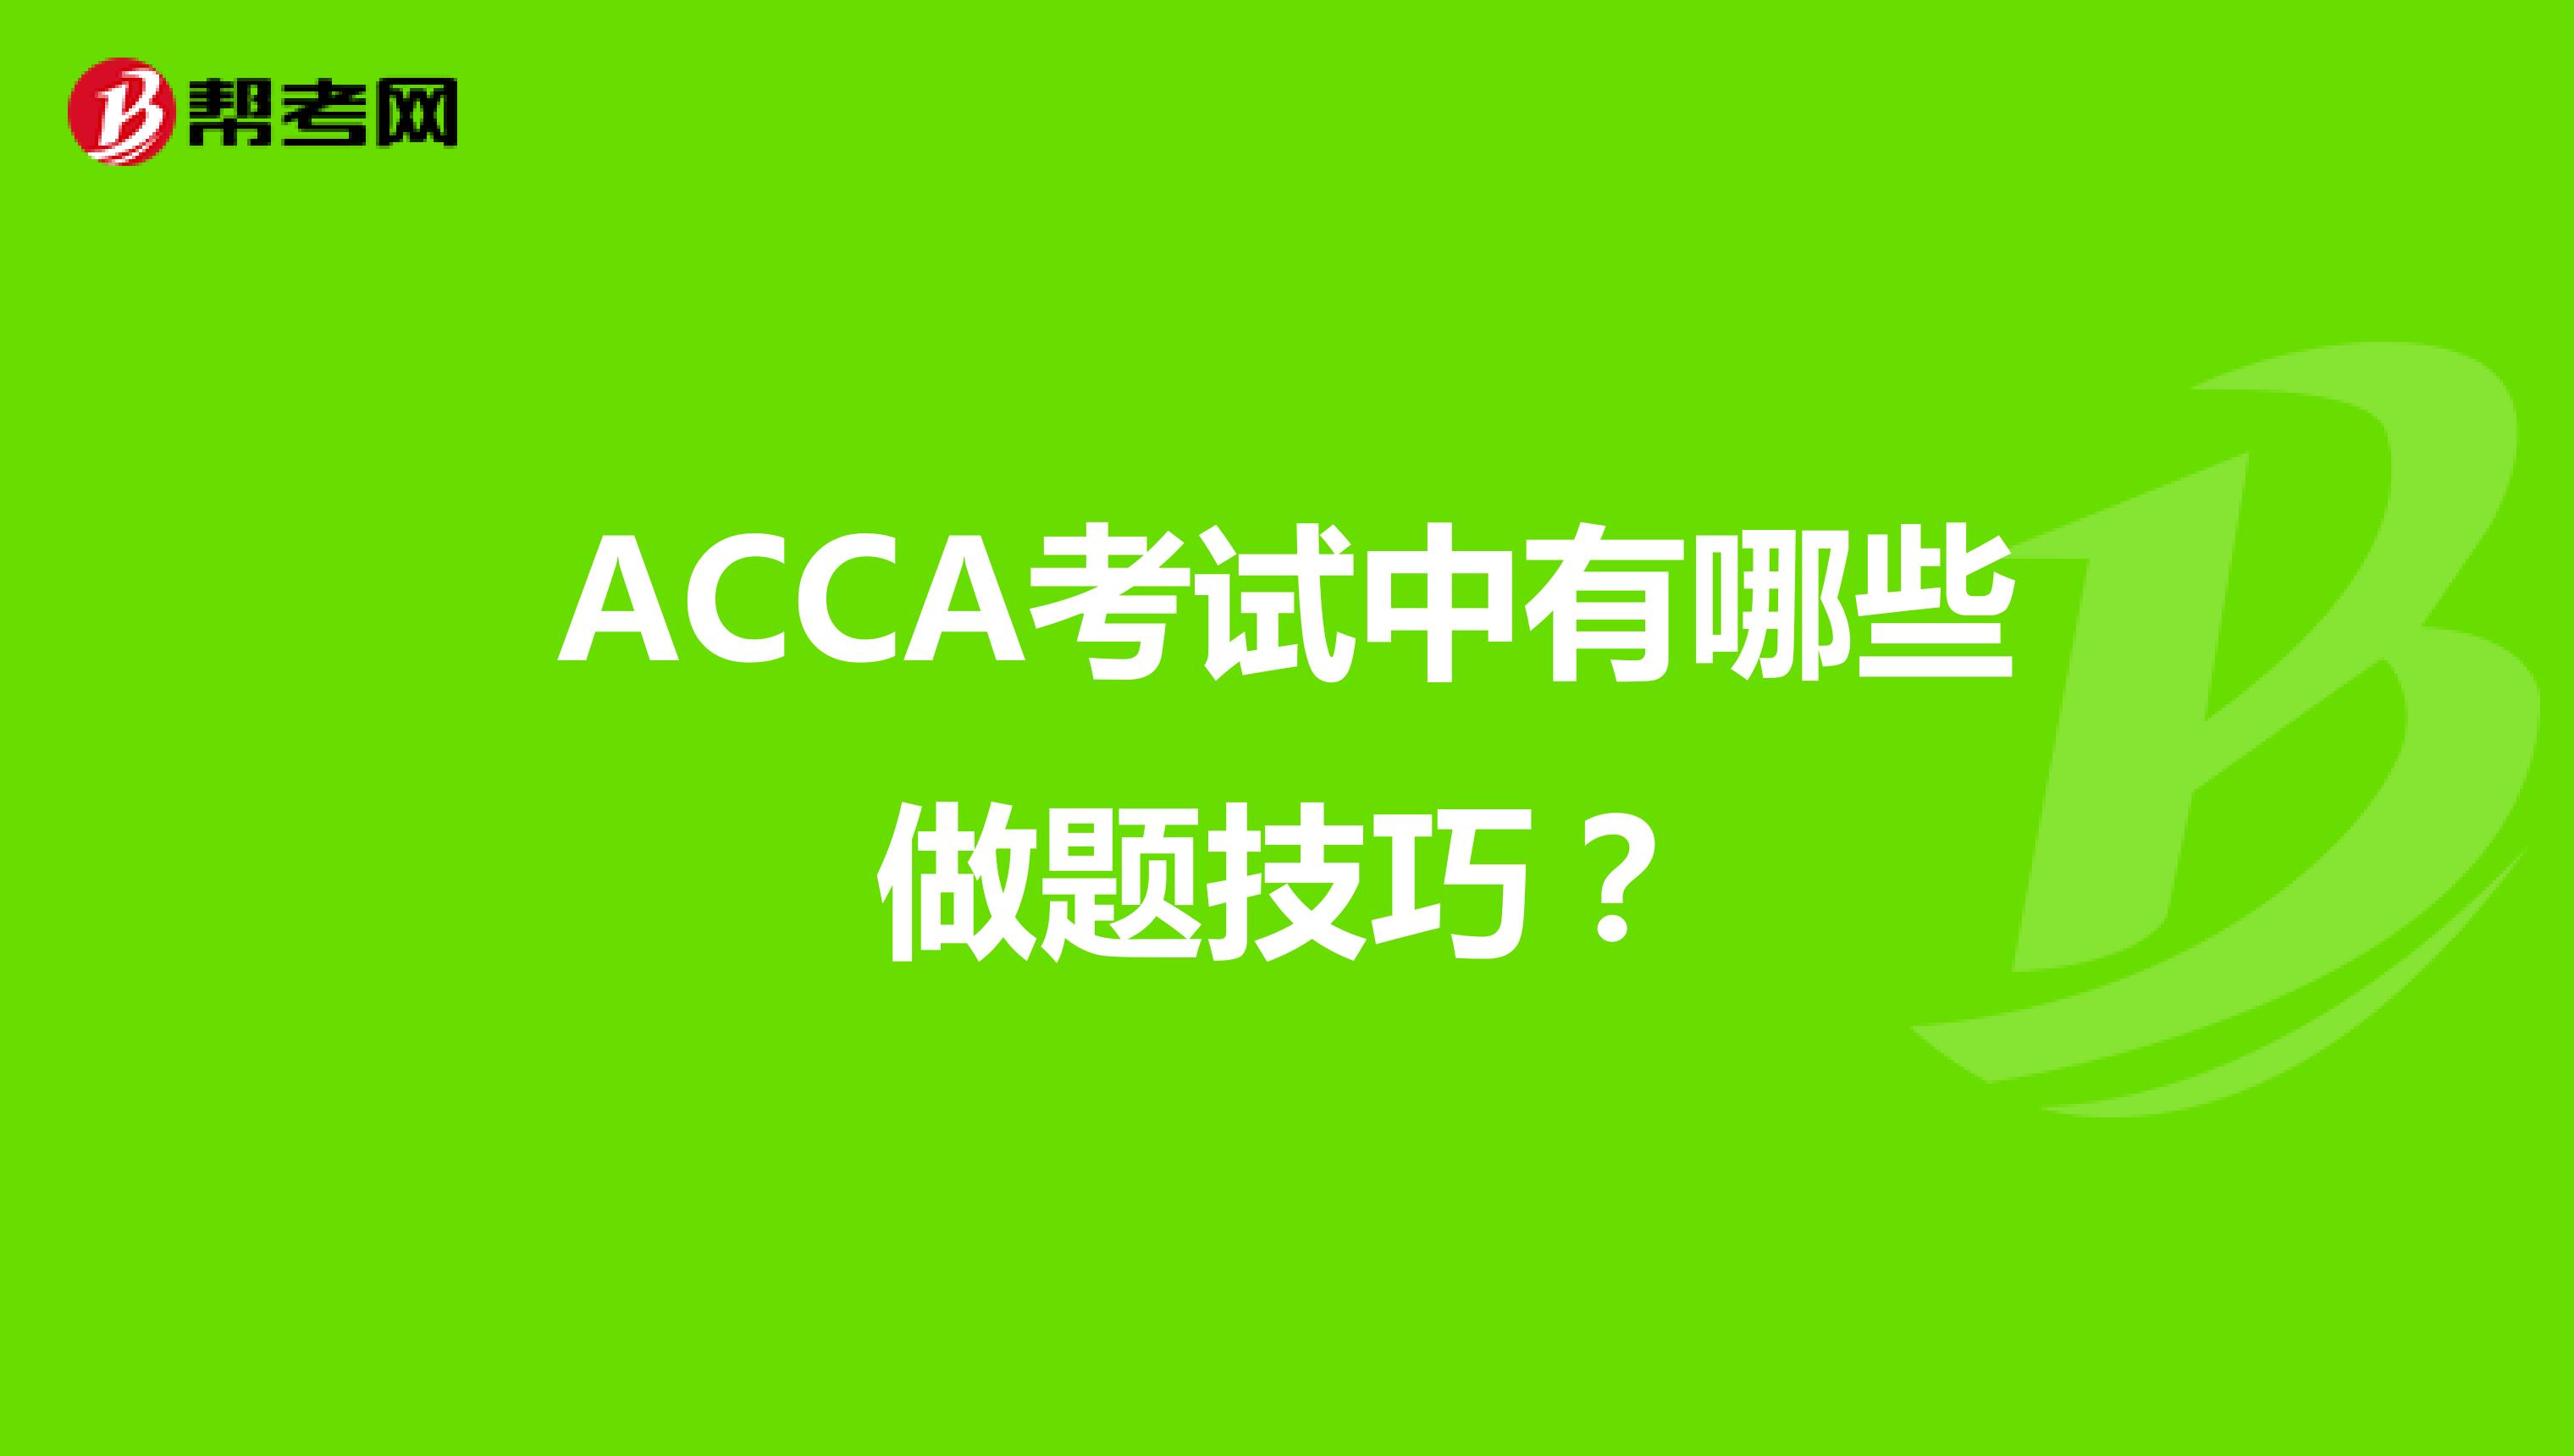 ACCA考试中有哪些做题小技巧？